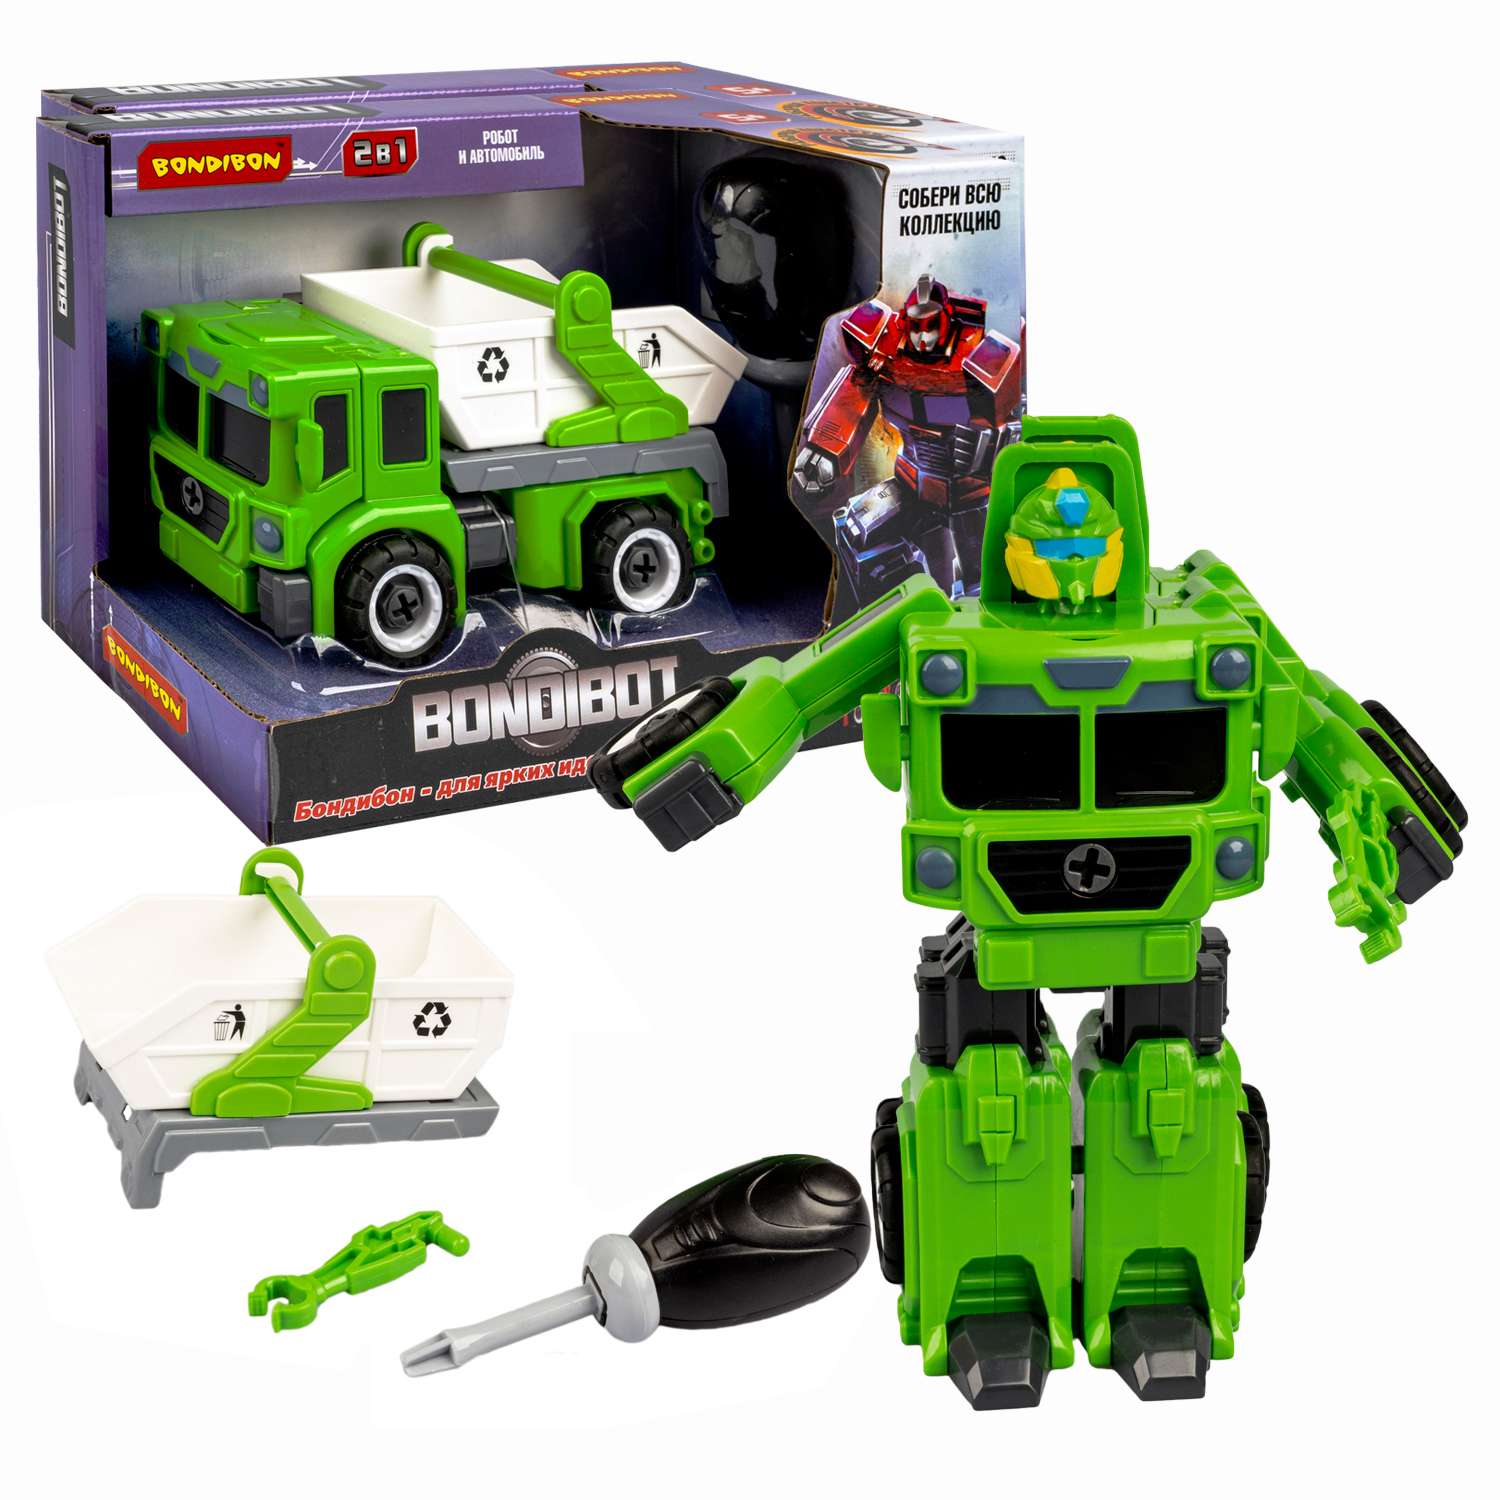 Трансформер-конструктор BONDIBON Bondibot Робот-мусоровоз 2 в 1 бело-зеленого цвета с отвёрткой - фото 1